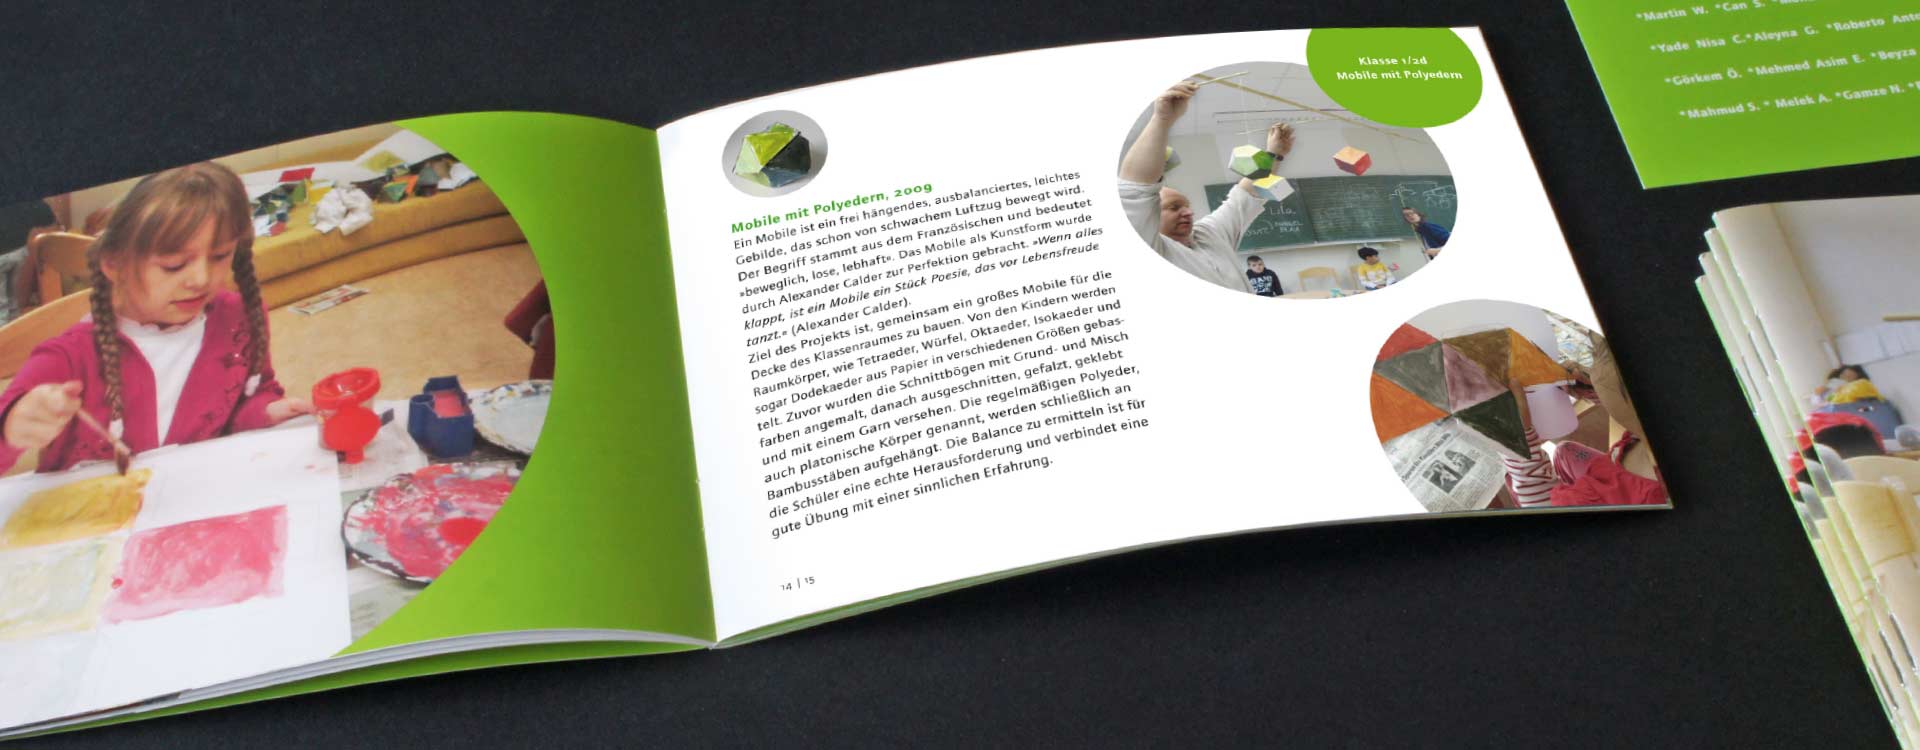 Inside pages of the brochure Bau Dir ein Bild der Welt, which documents the workshops of the artist group mazum; Design: Kattrin Richter | Graphic Design Studio